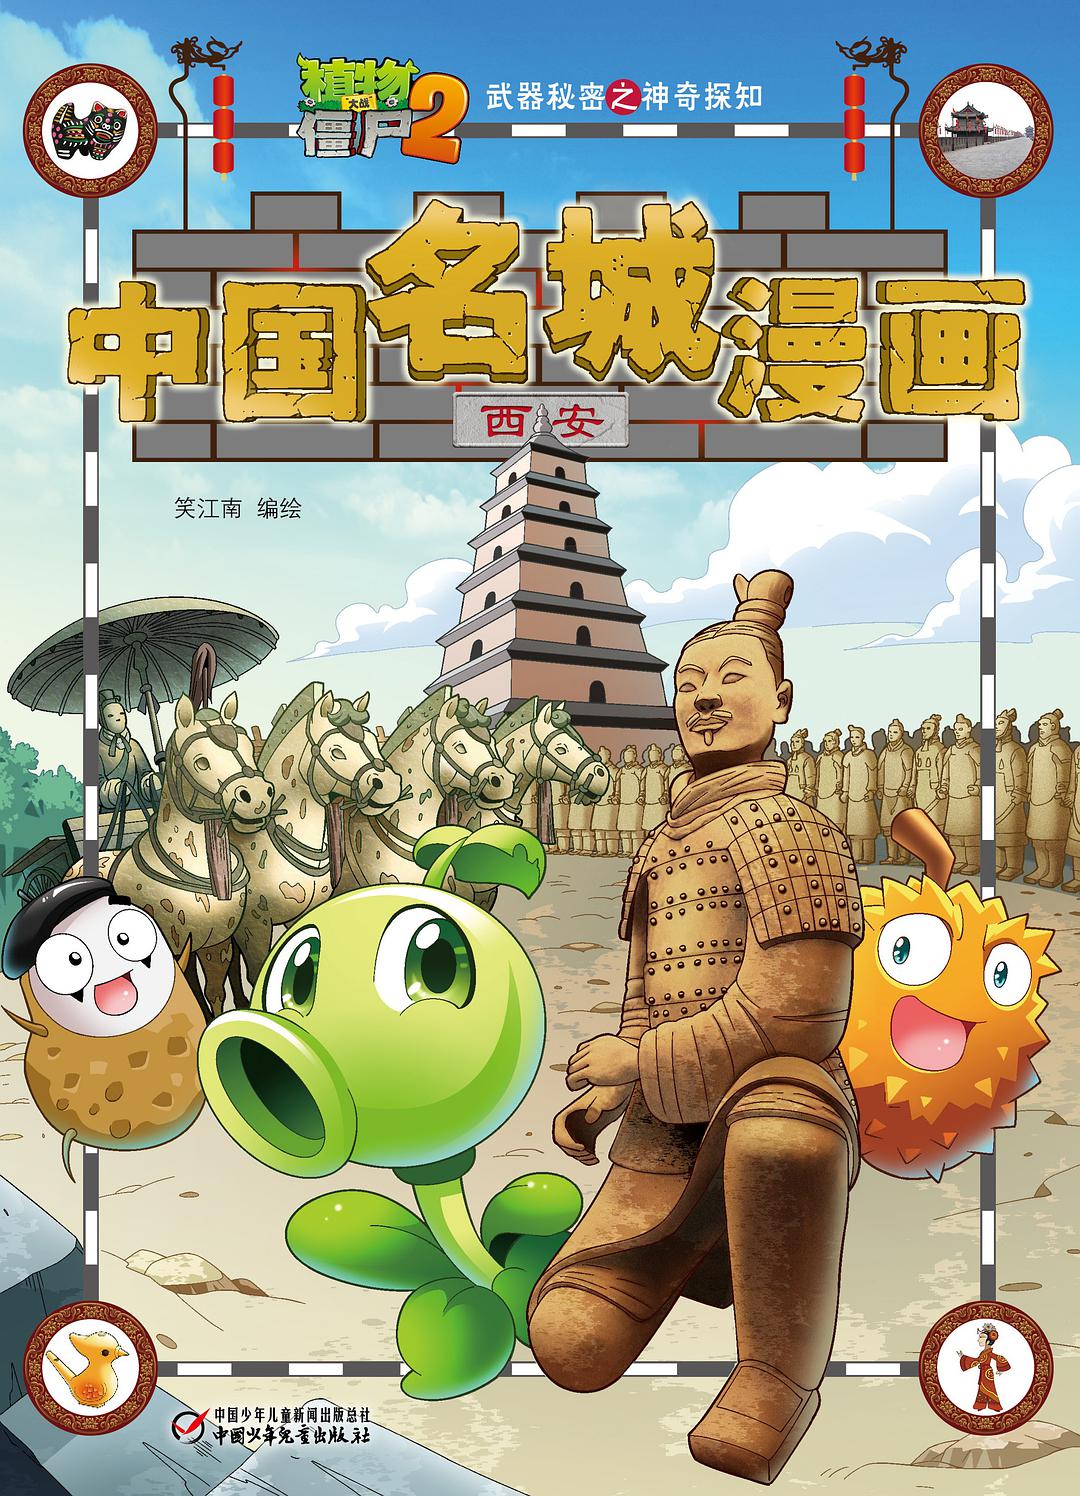 植物大战僵尸2武器秘密之神奇探知中国名城漫画 西安